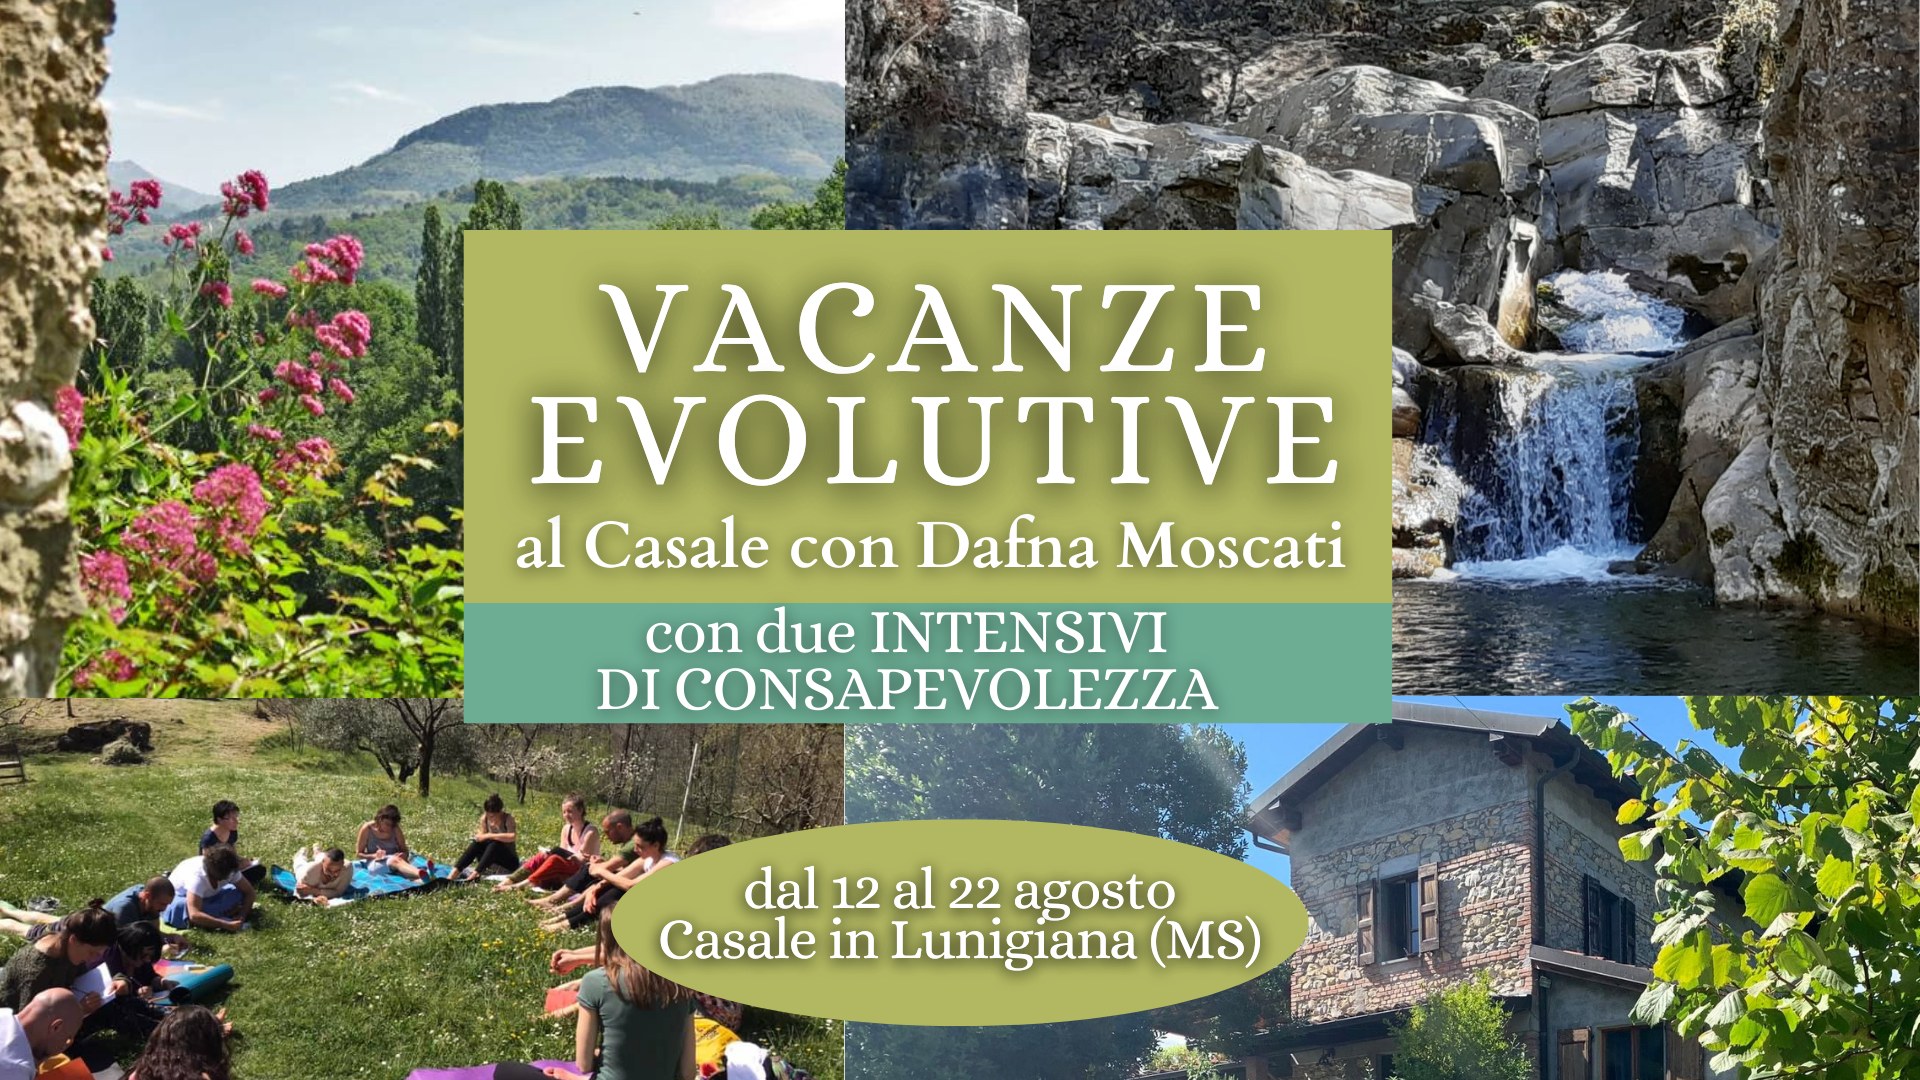 VACANZE EVOLUTIVE al Casale con Dafna Moscati